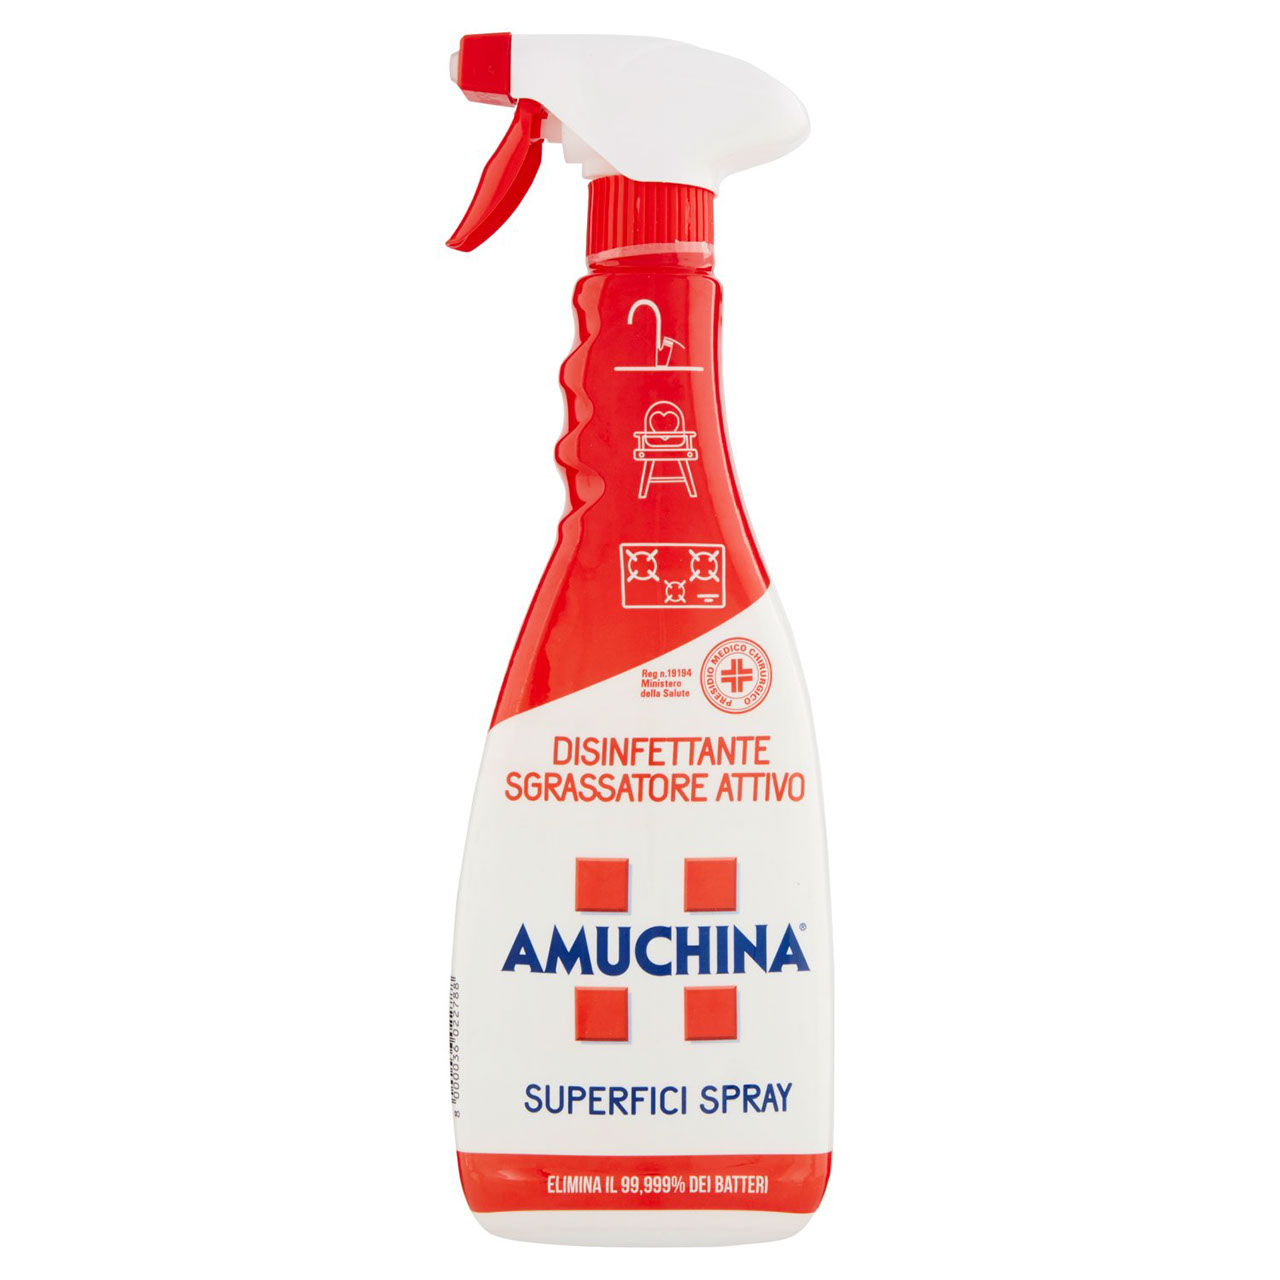 Amuchina Superfici Spray 750ml in vendita online